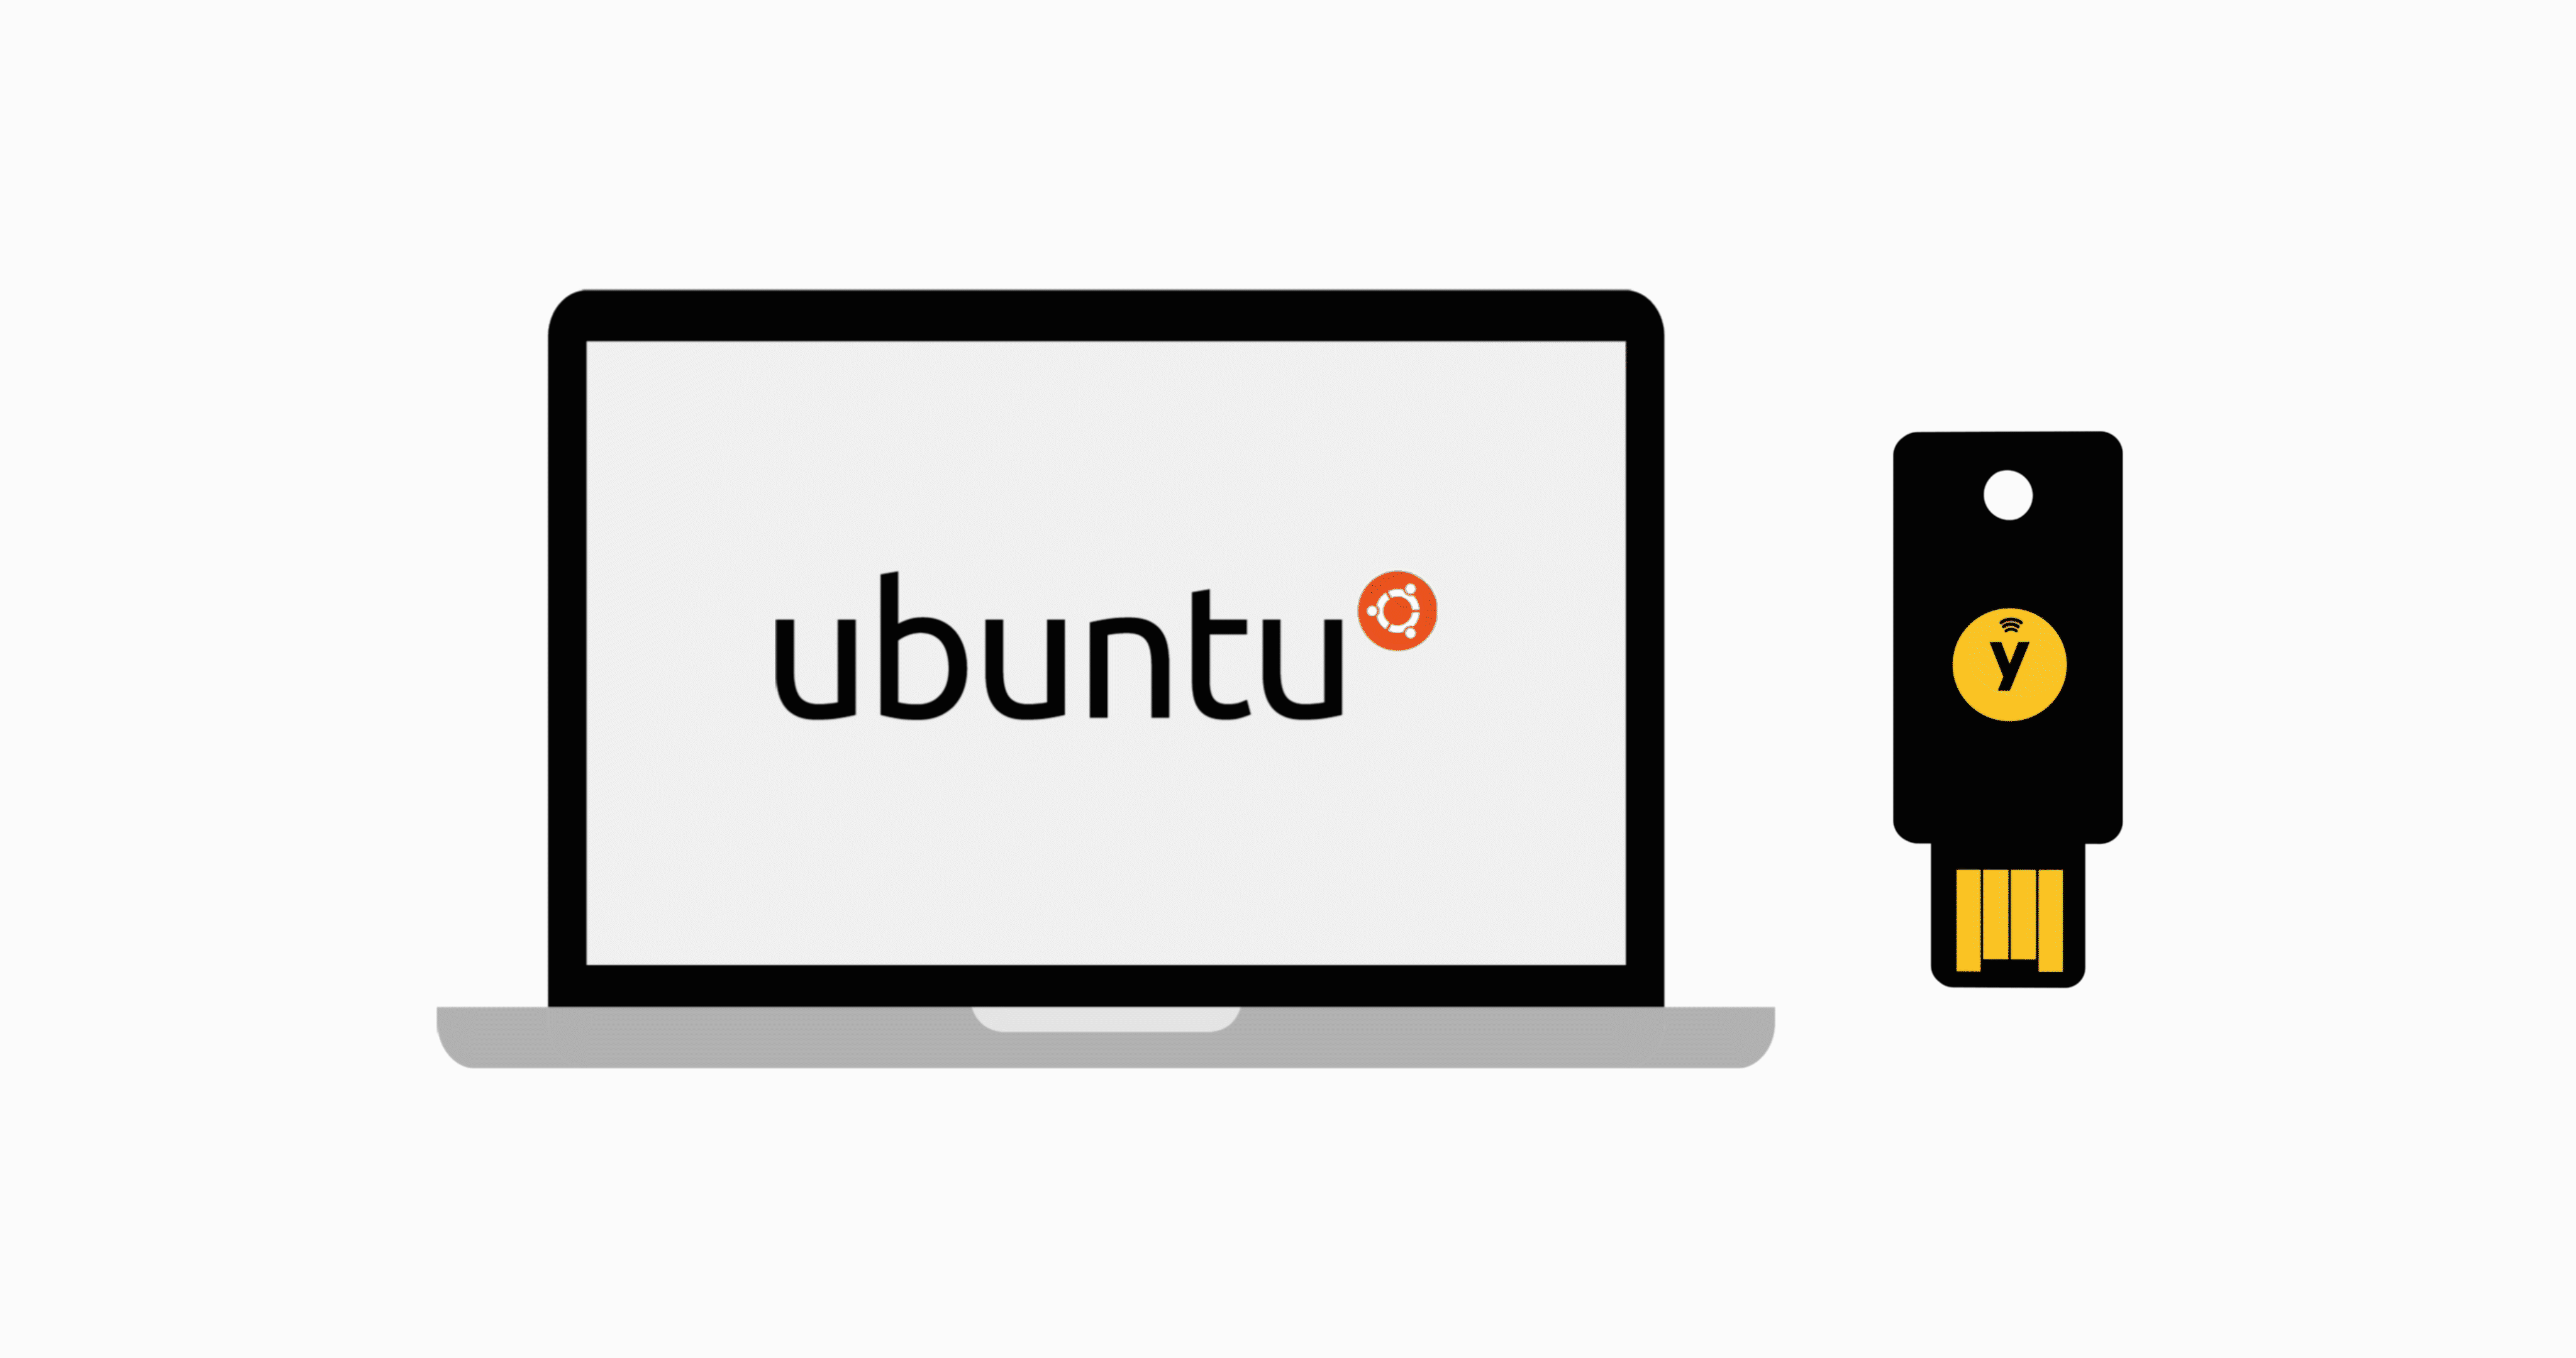 Ubuntu main image